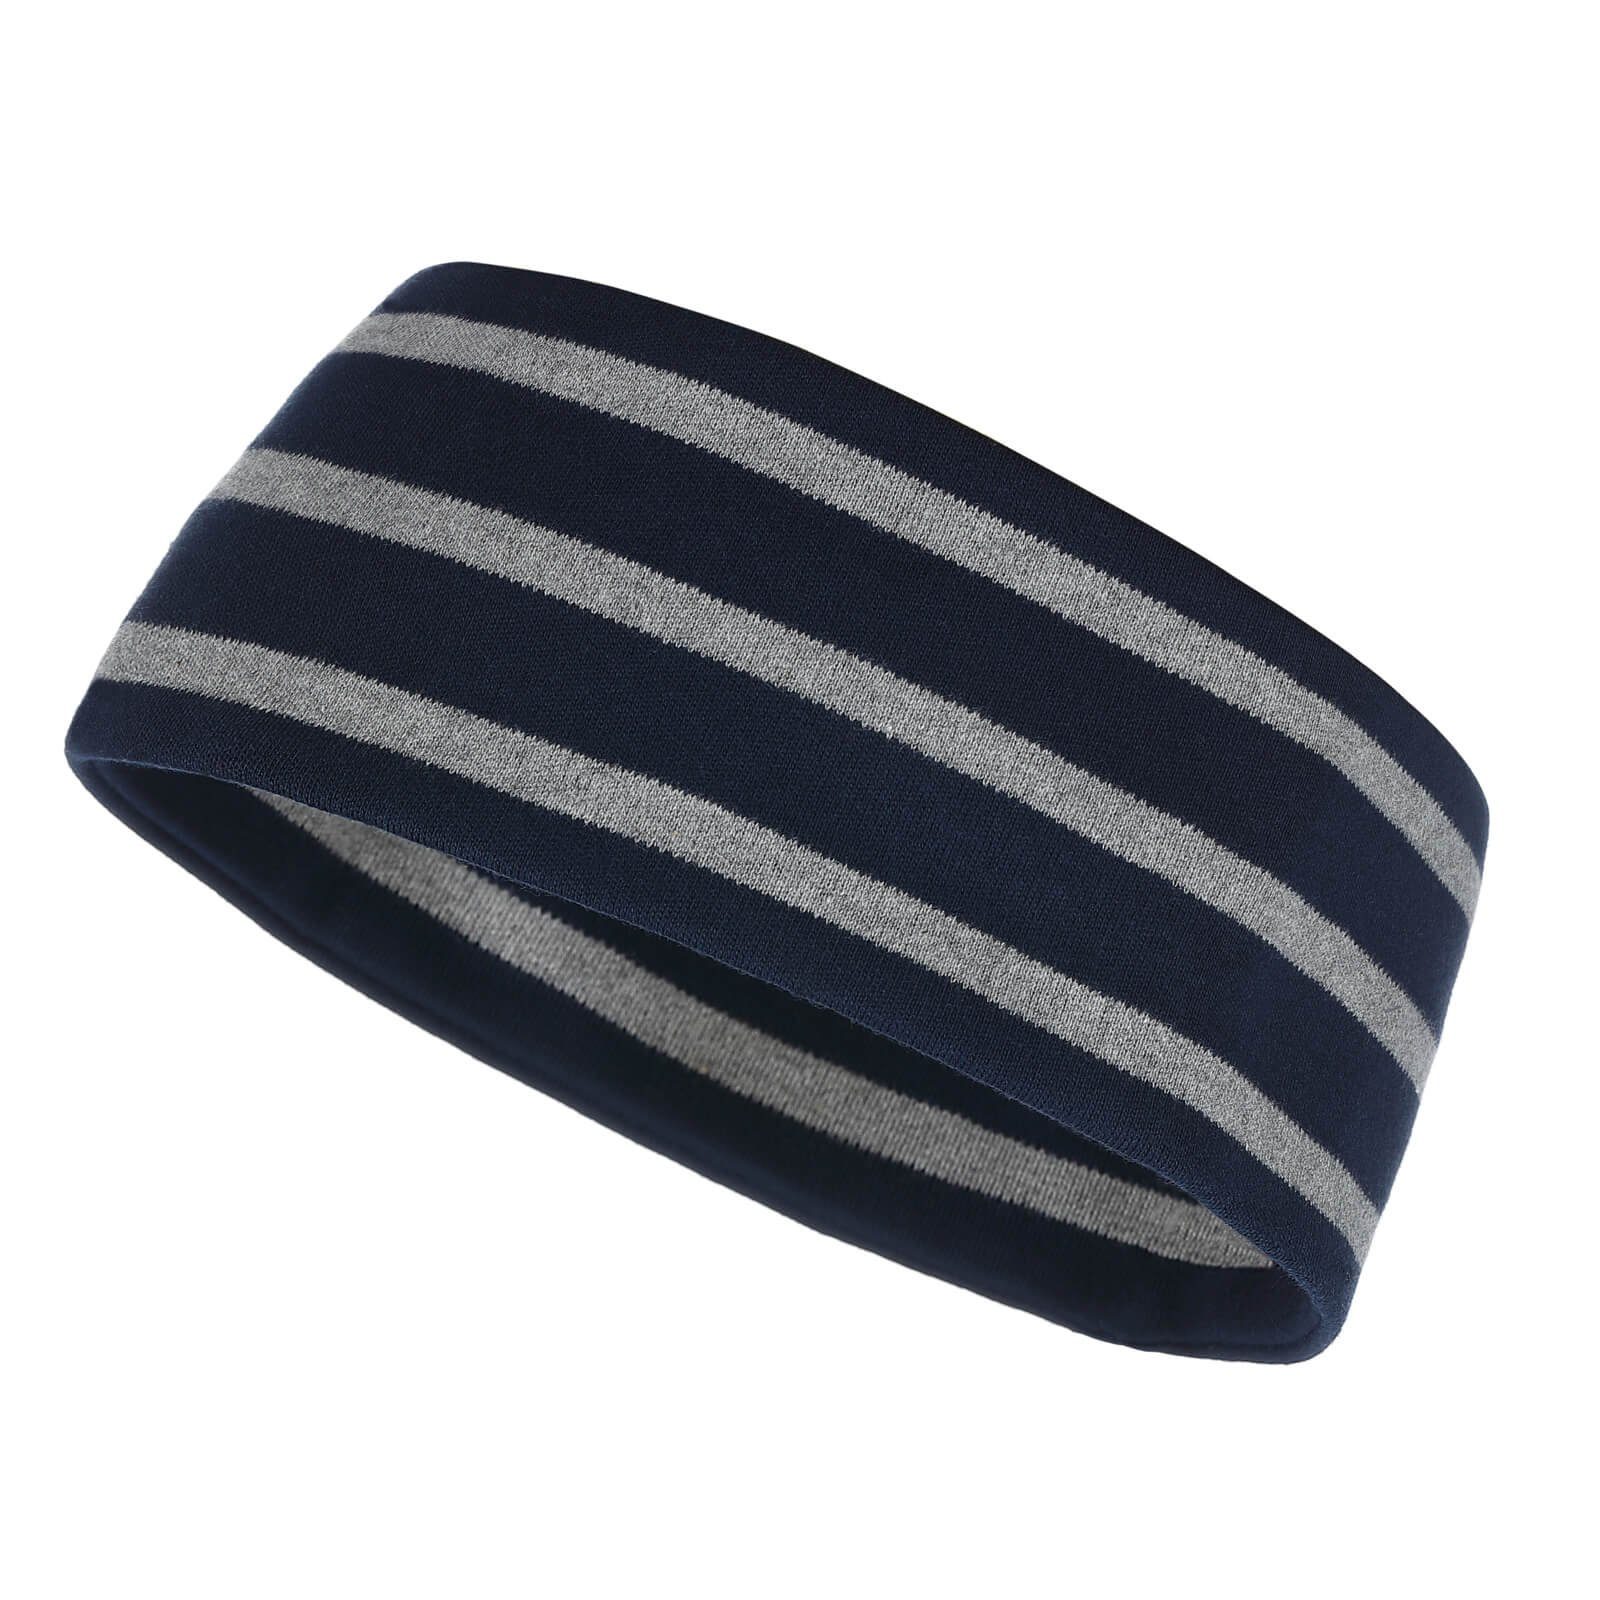 modAS Stirnband Unisex Kopfband Maritim für Kinder und Erwachsene zweilagig Baumwolle (56) blau / graumelange